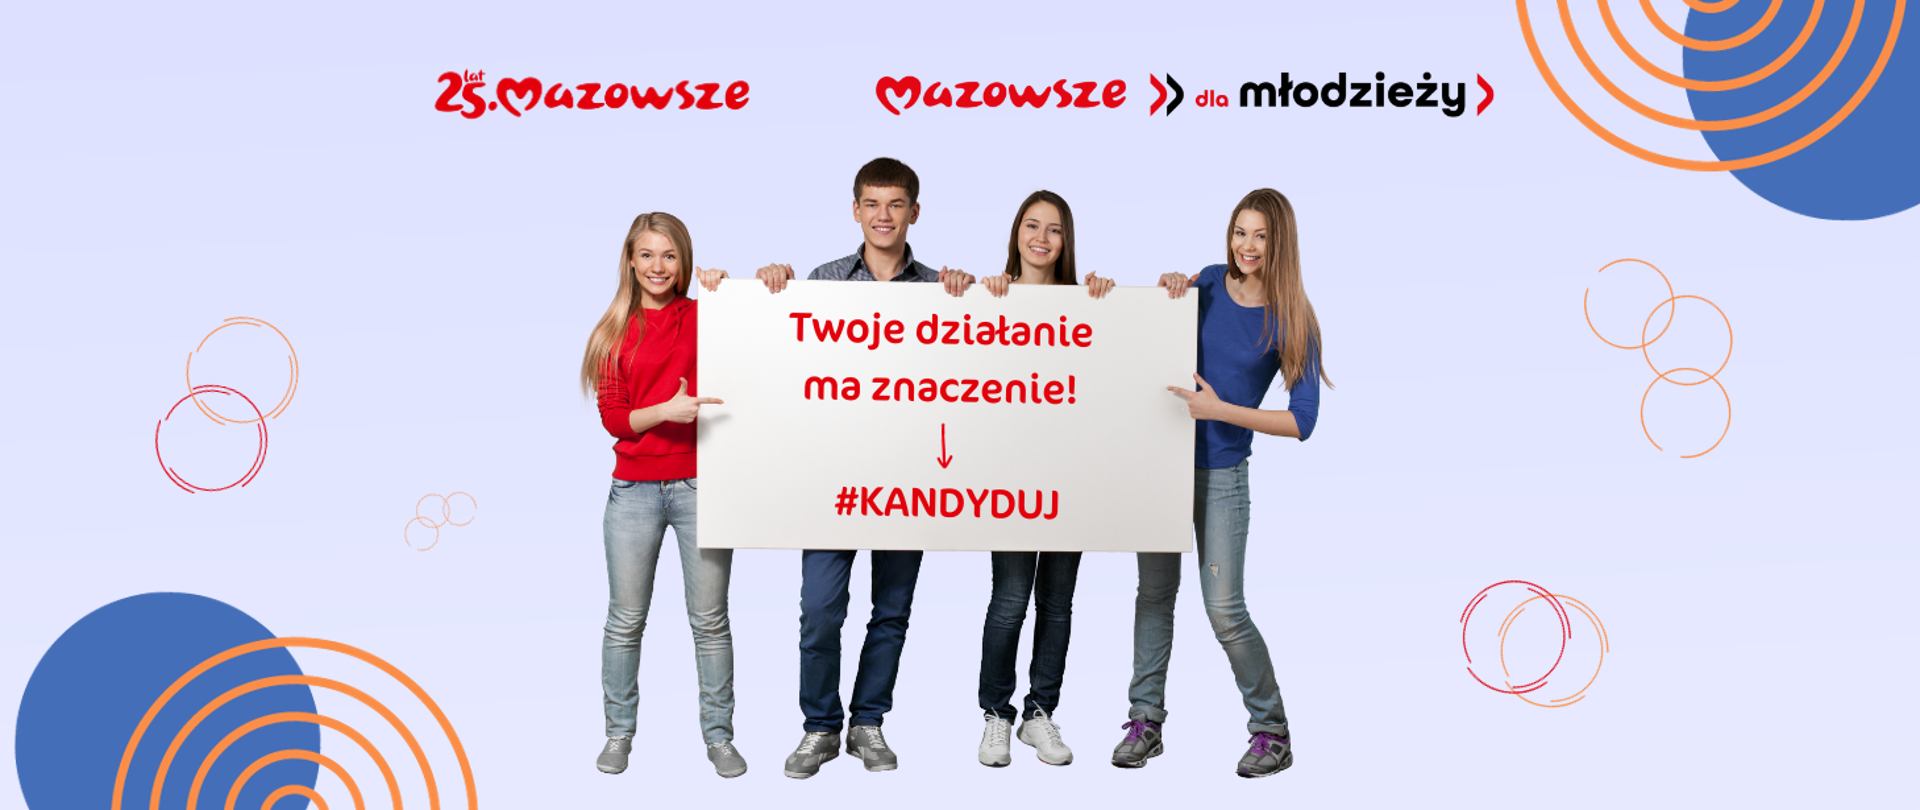 Młodzieżowa Rada - logotypy Mazowsza